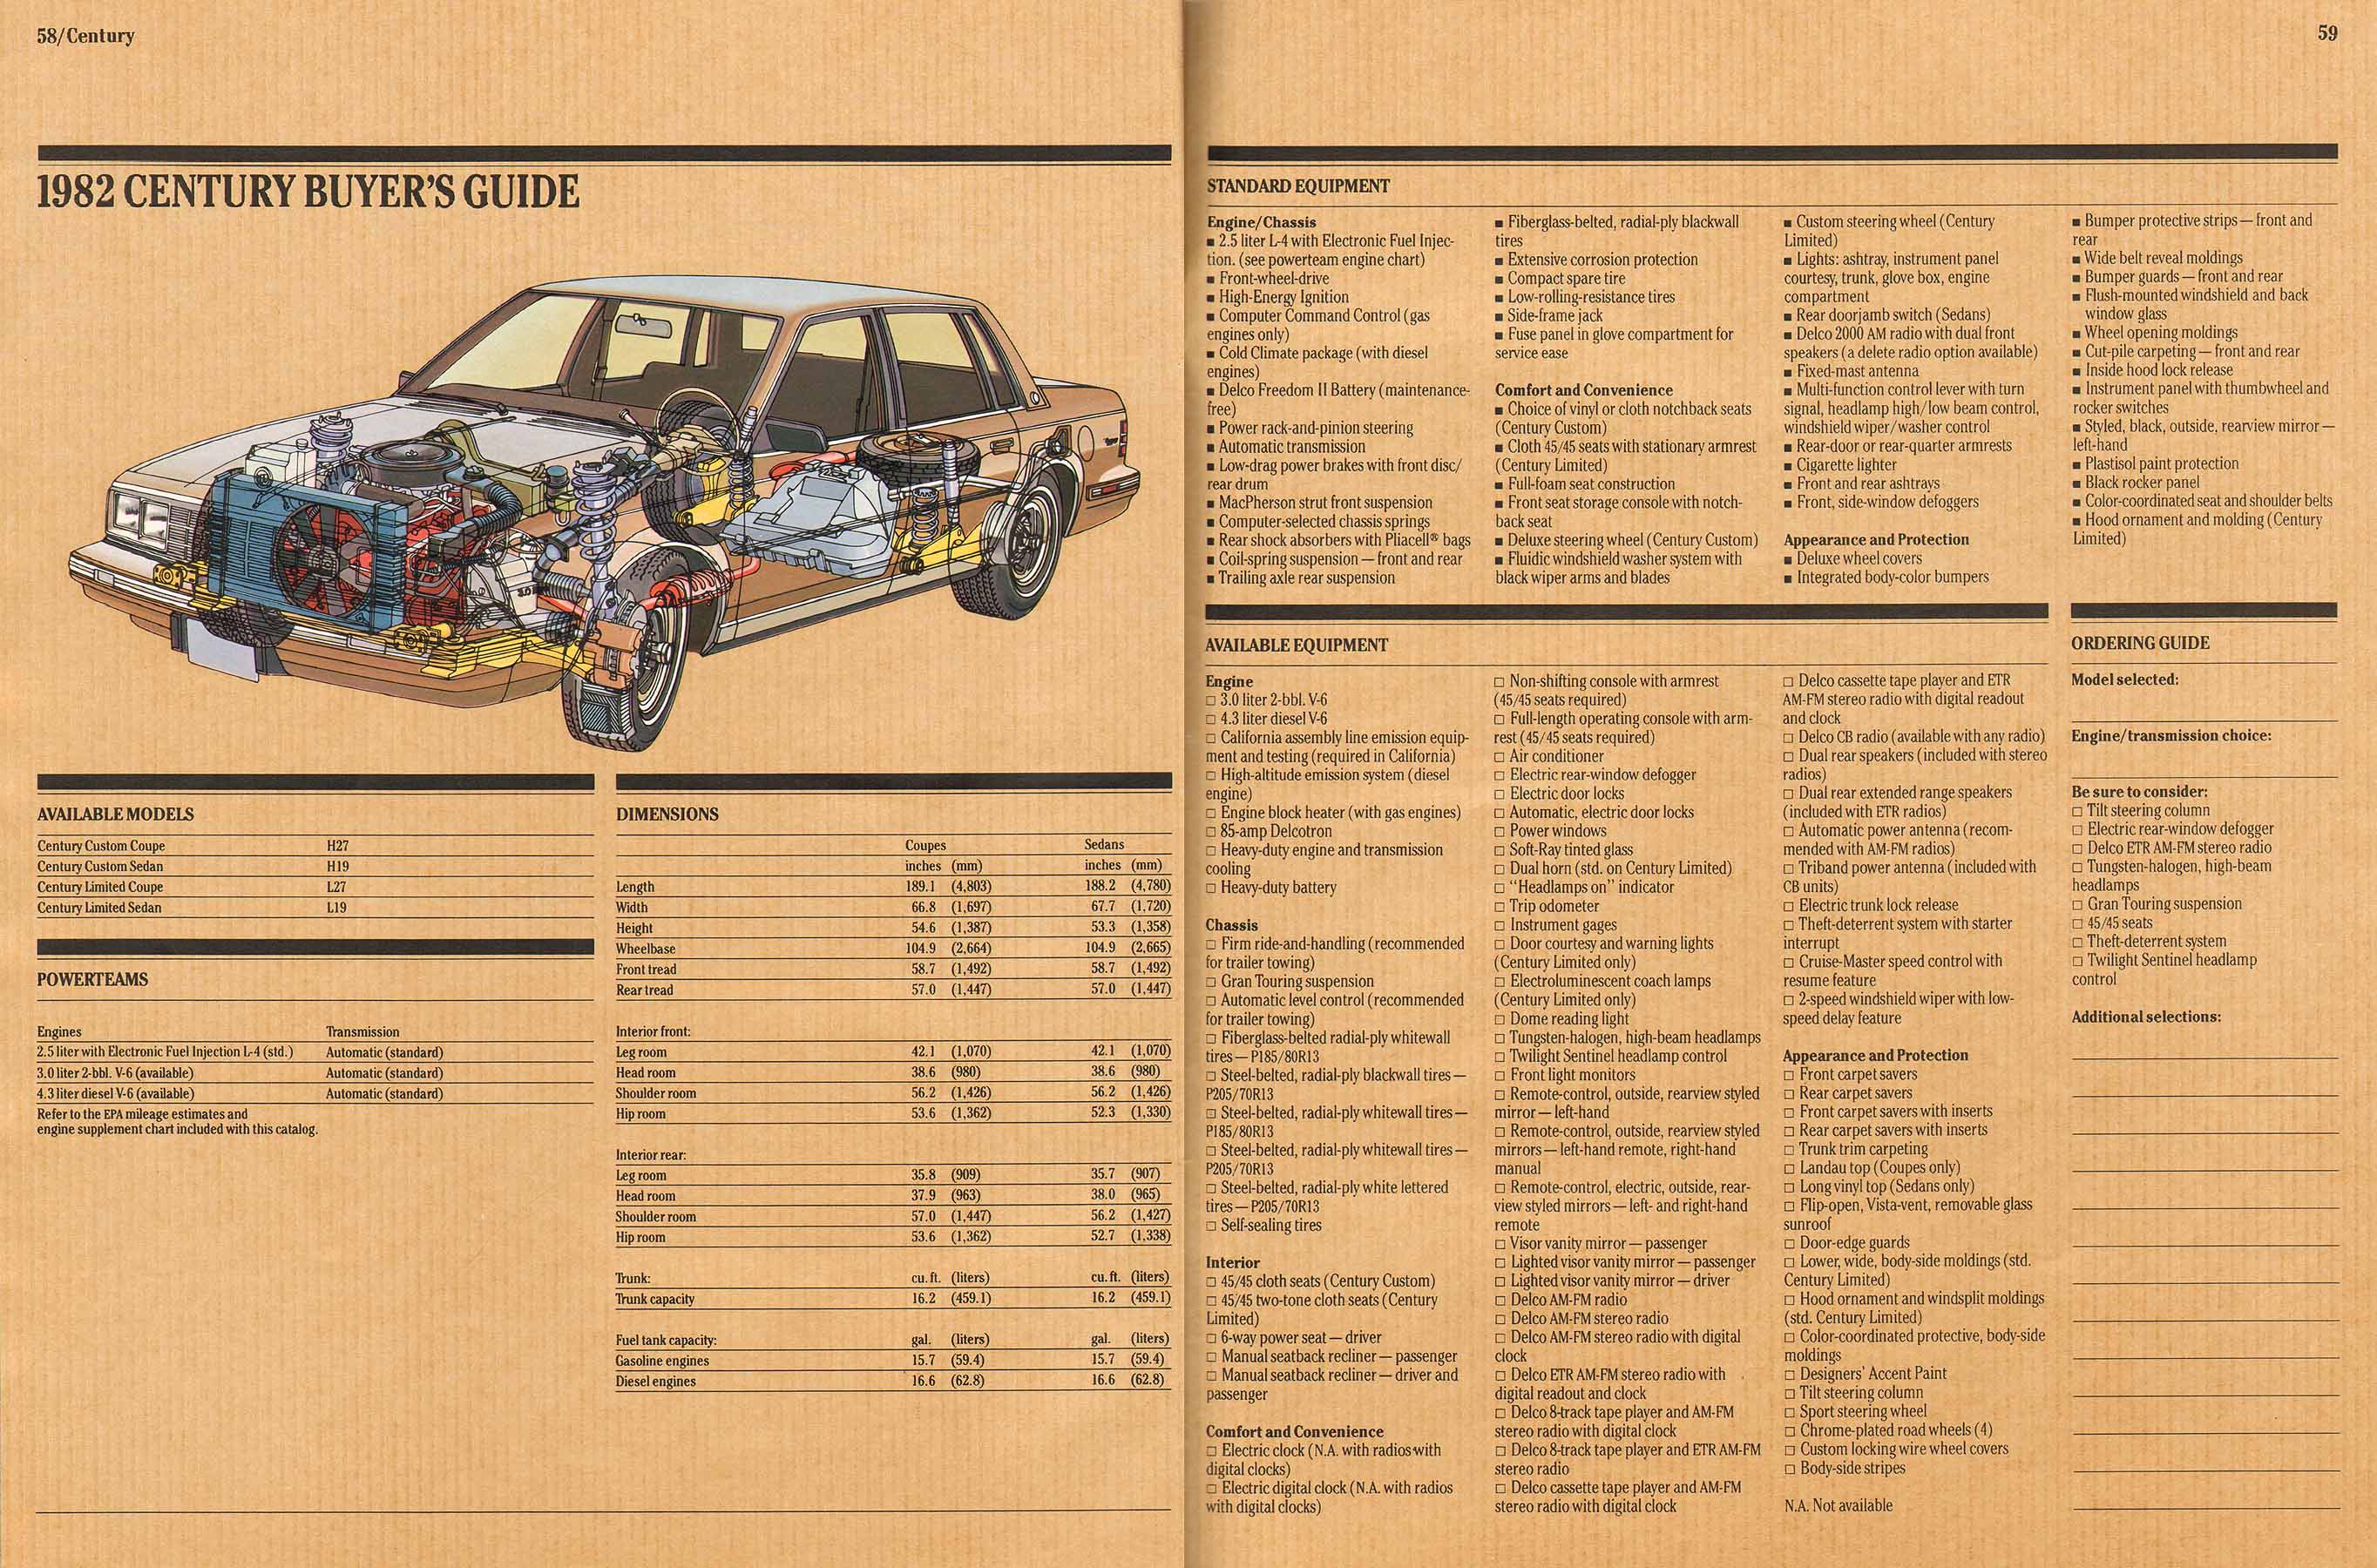 1982 Buick Full Line Prestige-58-59